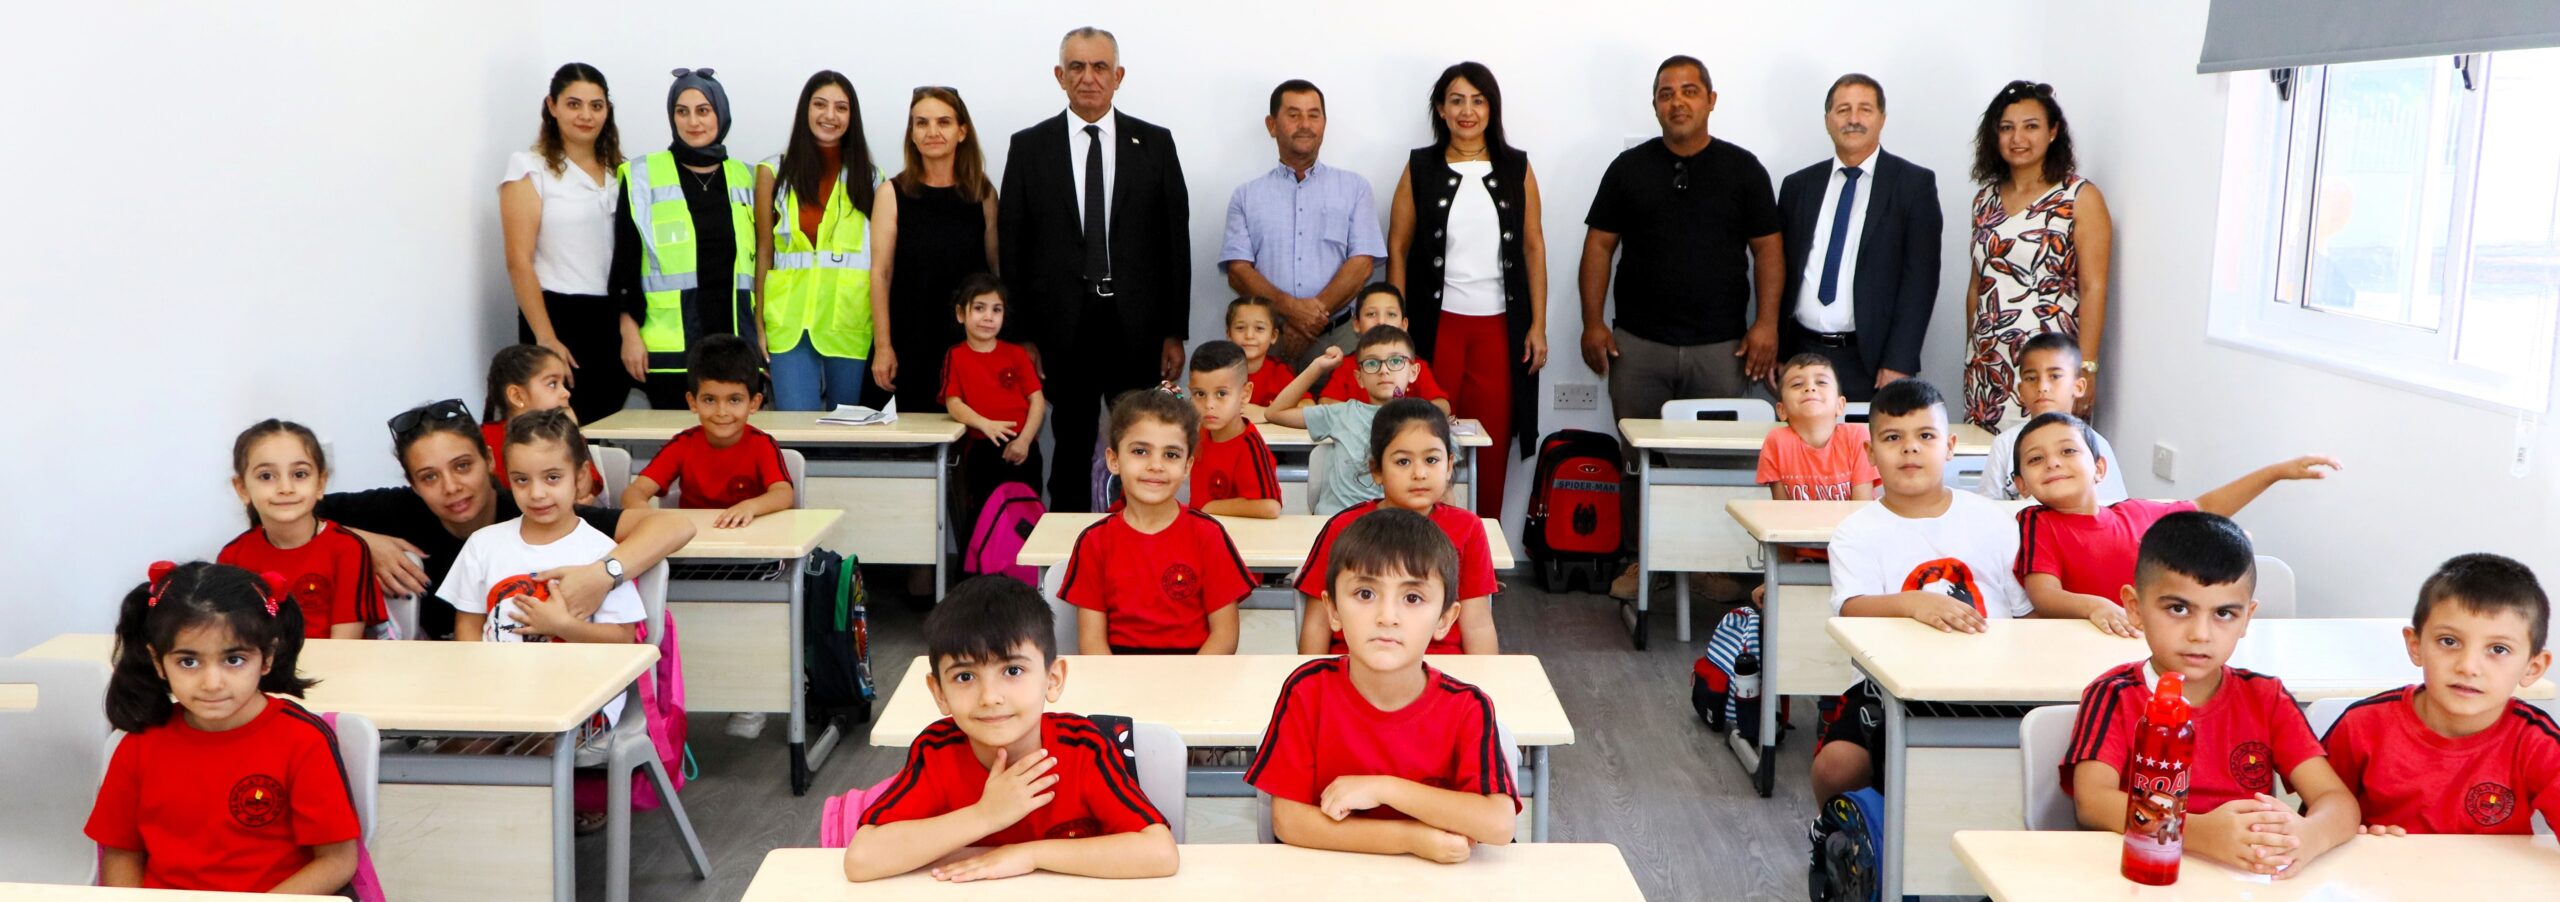 Milli Eğitim Bakanı Çavuşoğlu: Geleceğin aydınlık yüzleri sizlersiniz